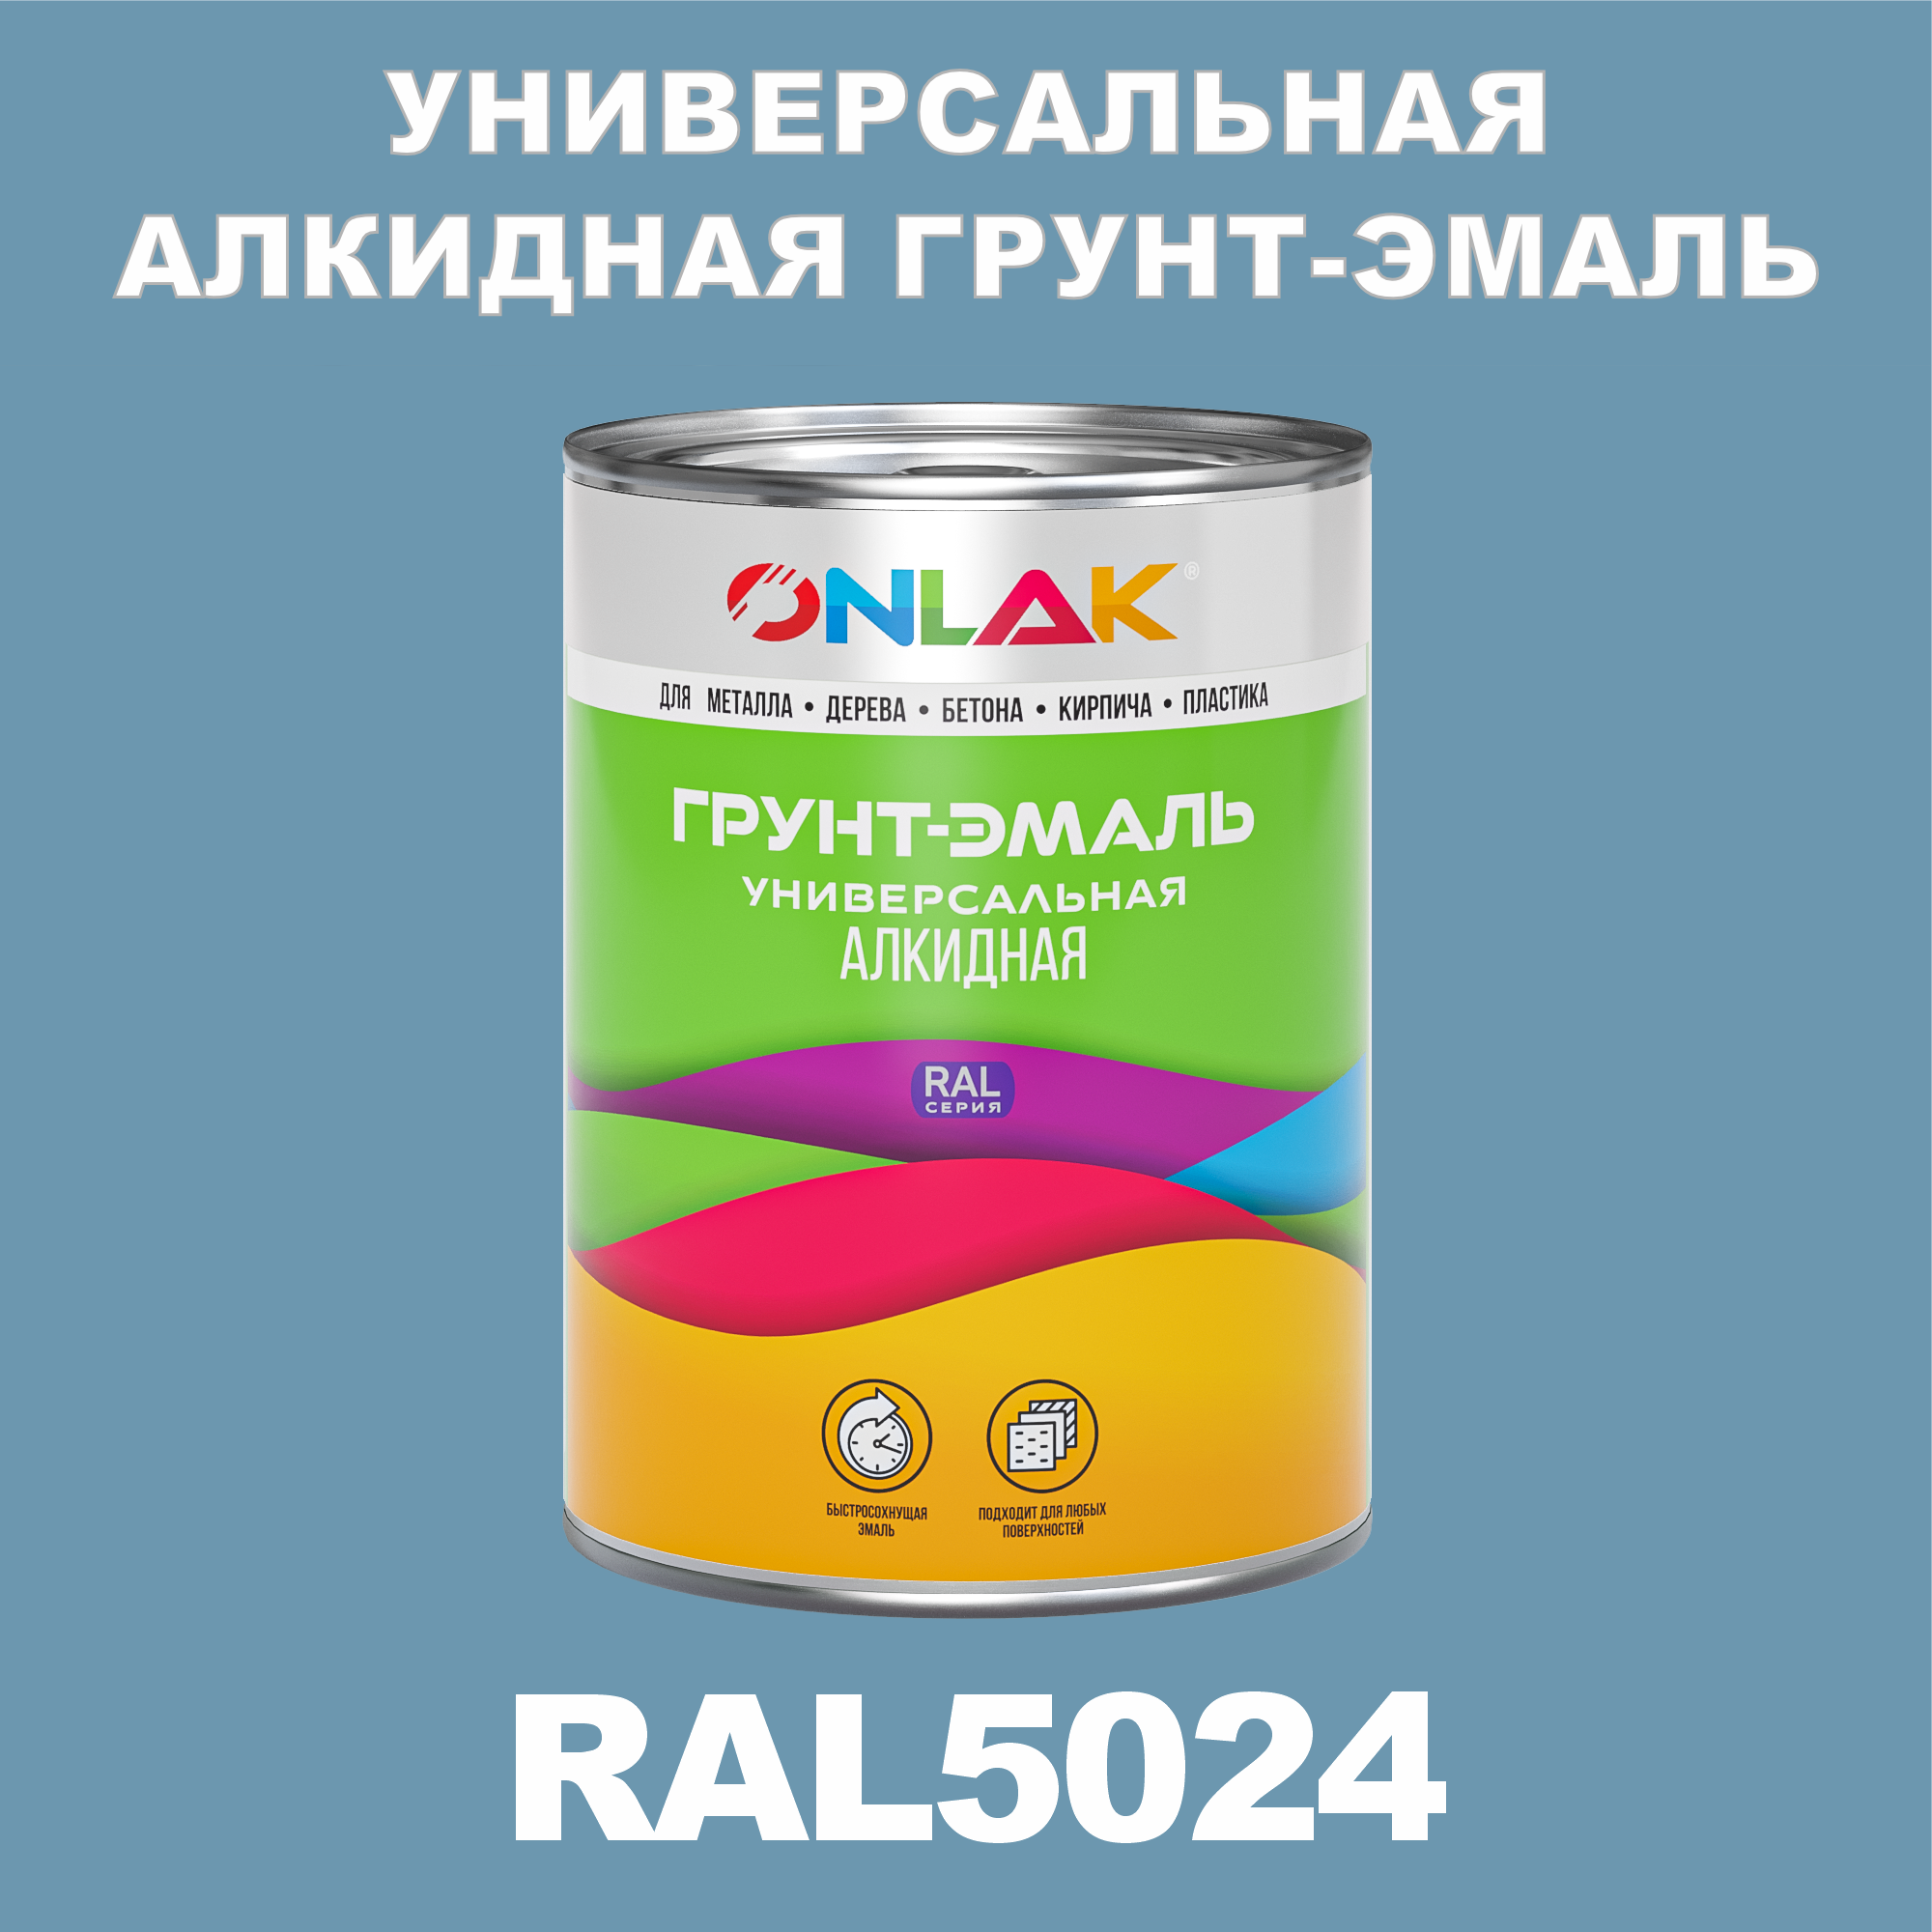 Грунт-эмаль ONLAK 1К RAL5024 антикоррозионная алкидная по металлу по ржавчине 1 кг грунт эмаль yollo по ржавчине алкидная синяя 0 9 кг